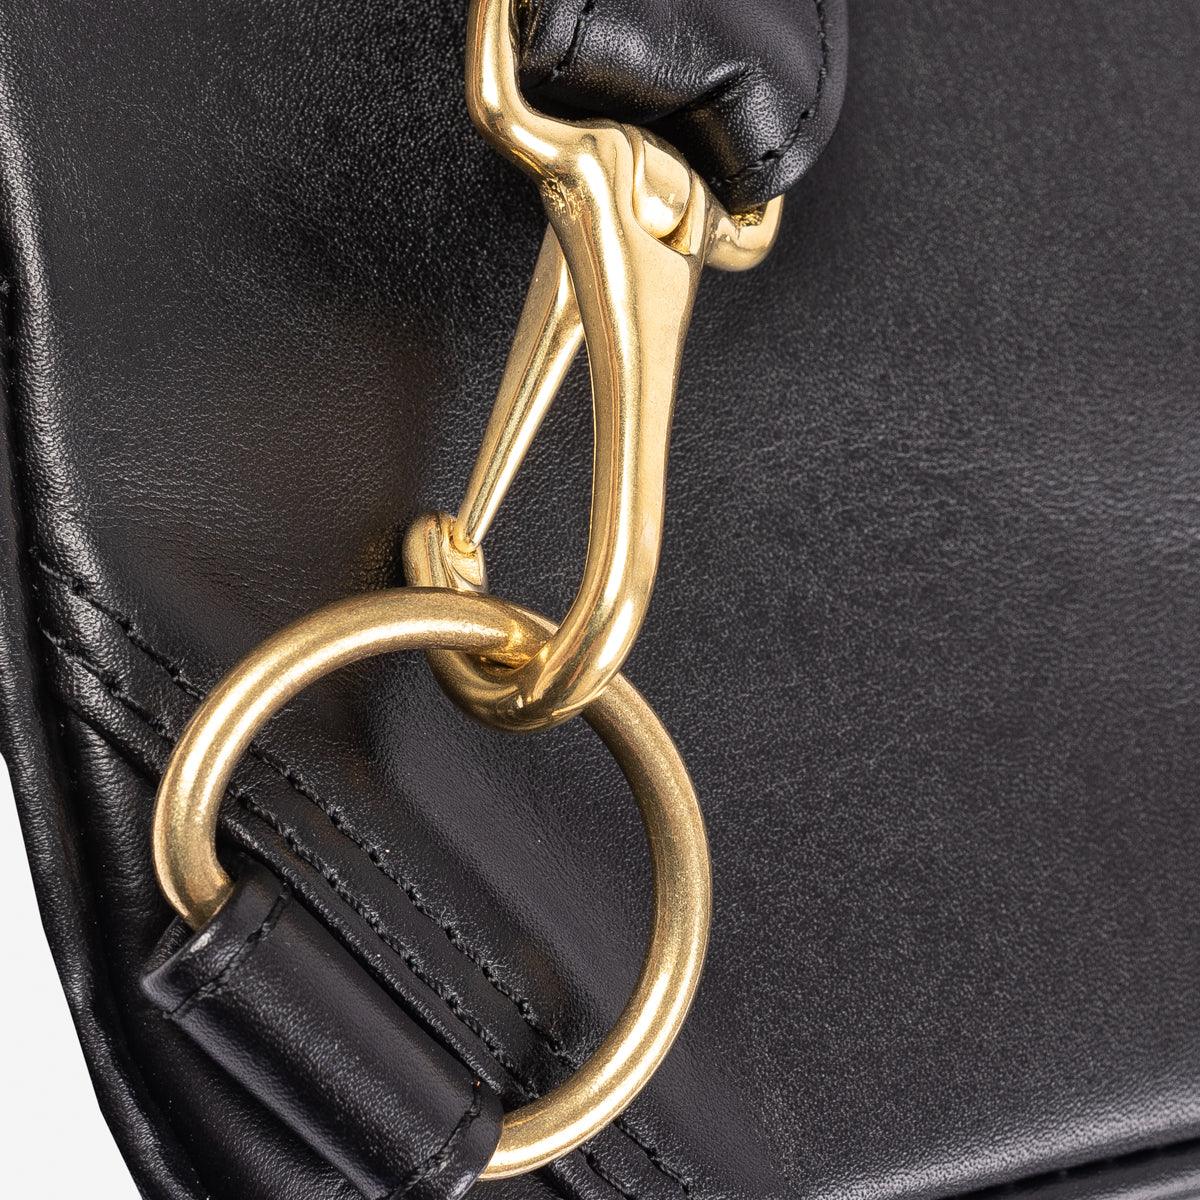 IHE-40-BLK - Rectangular Leather Diamond Stitched Shoulder Bag Black